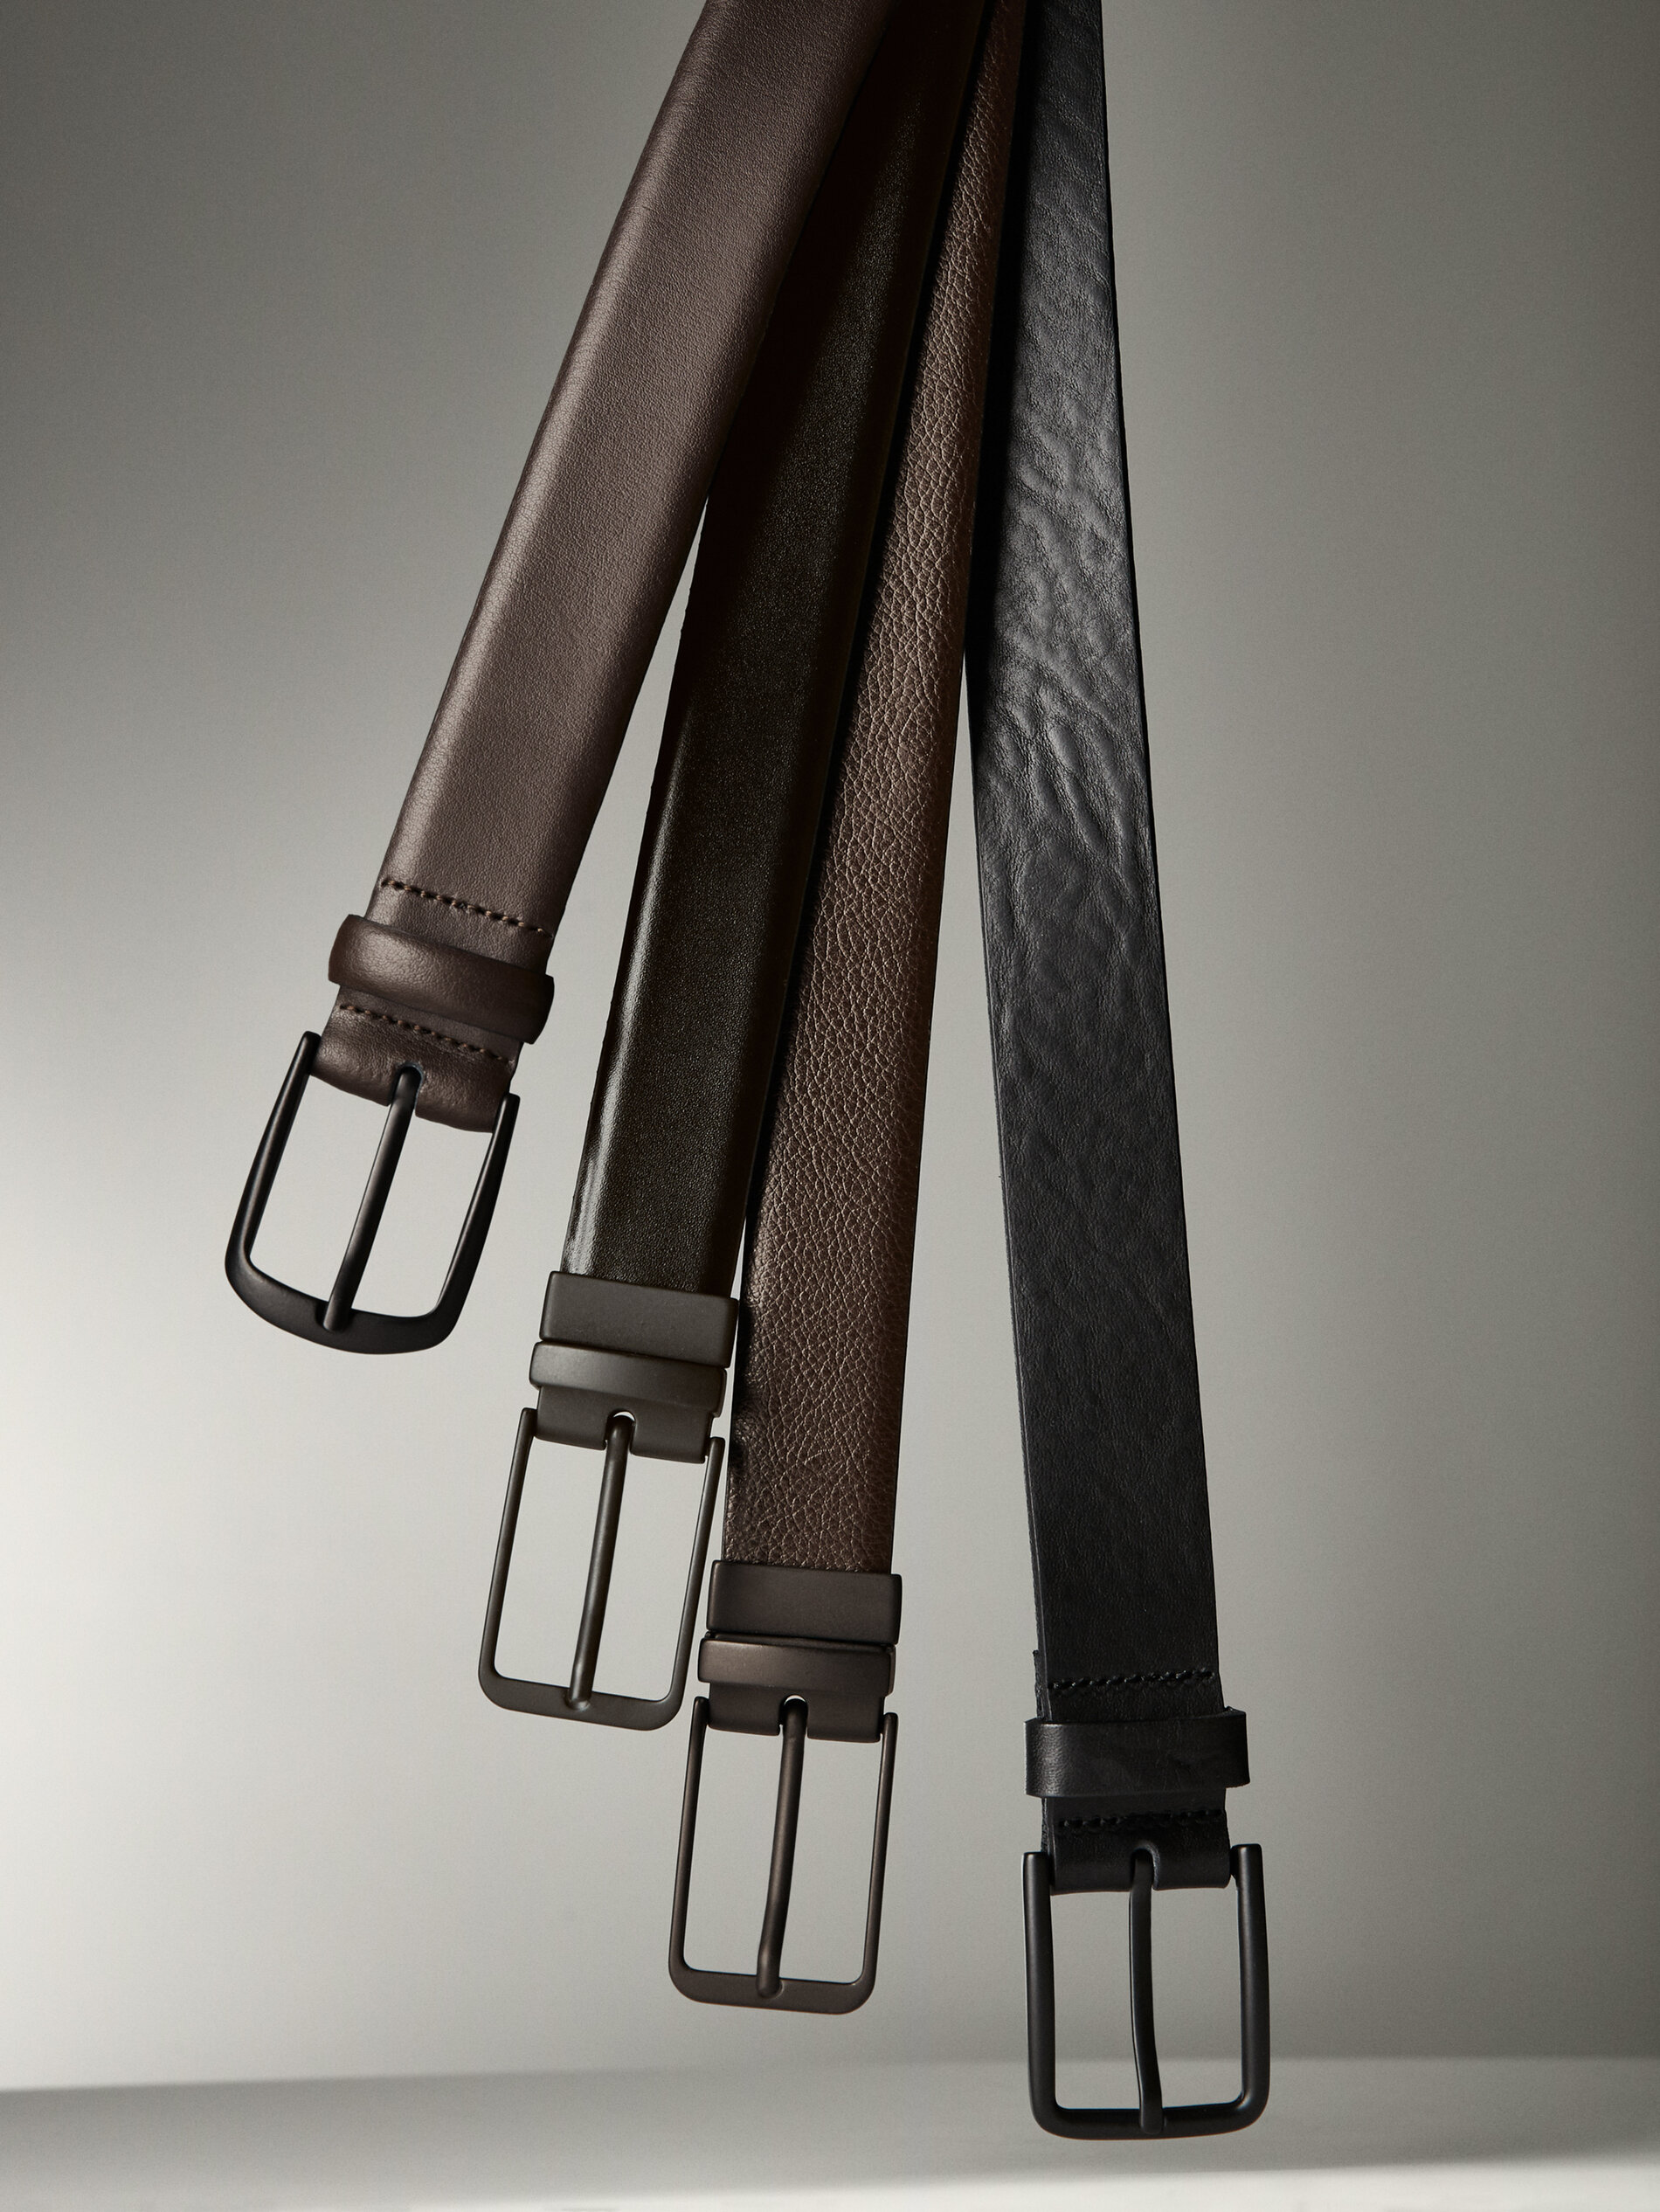 Accesorios Cinturones Cinturones de cuero de imitación Massimo Dutti Cintur\u00f3n de cuero de imitaci\u00f3n rojo estampado a rayas elegante 